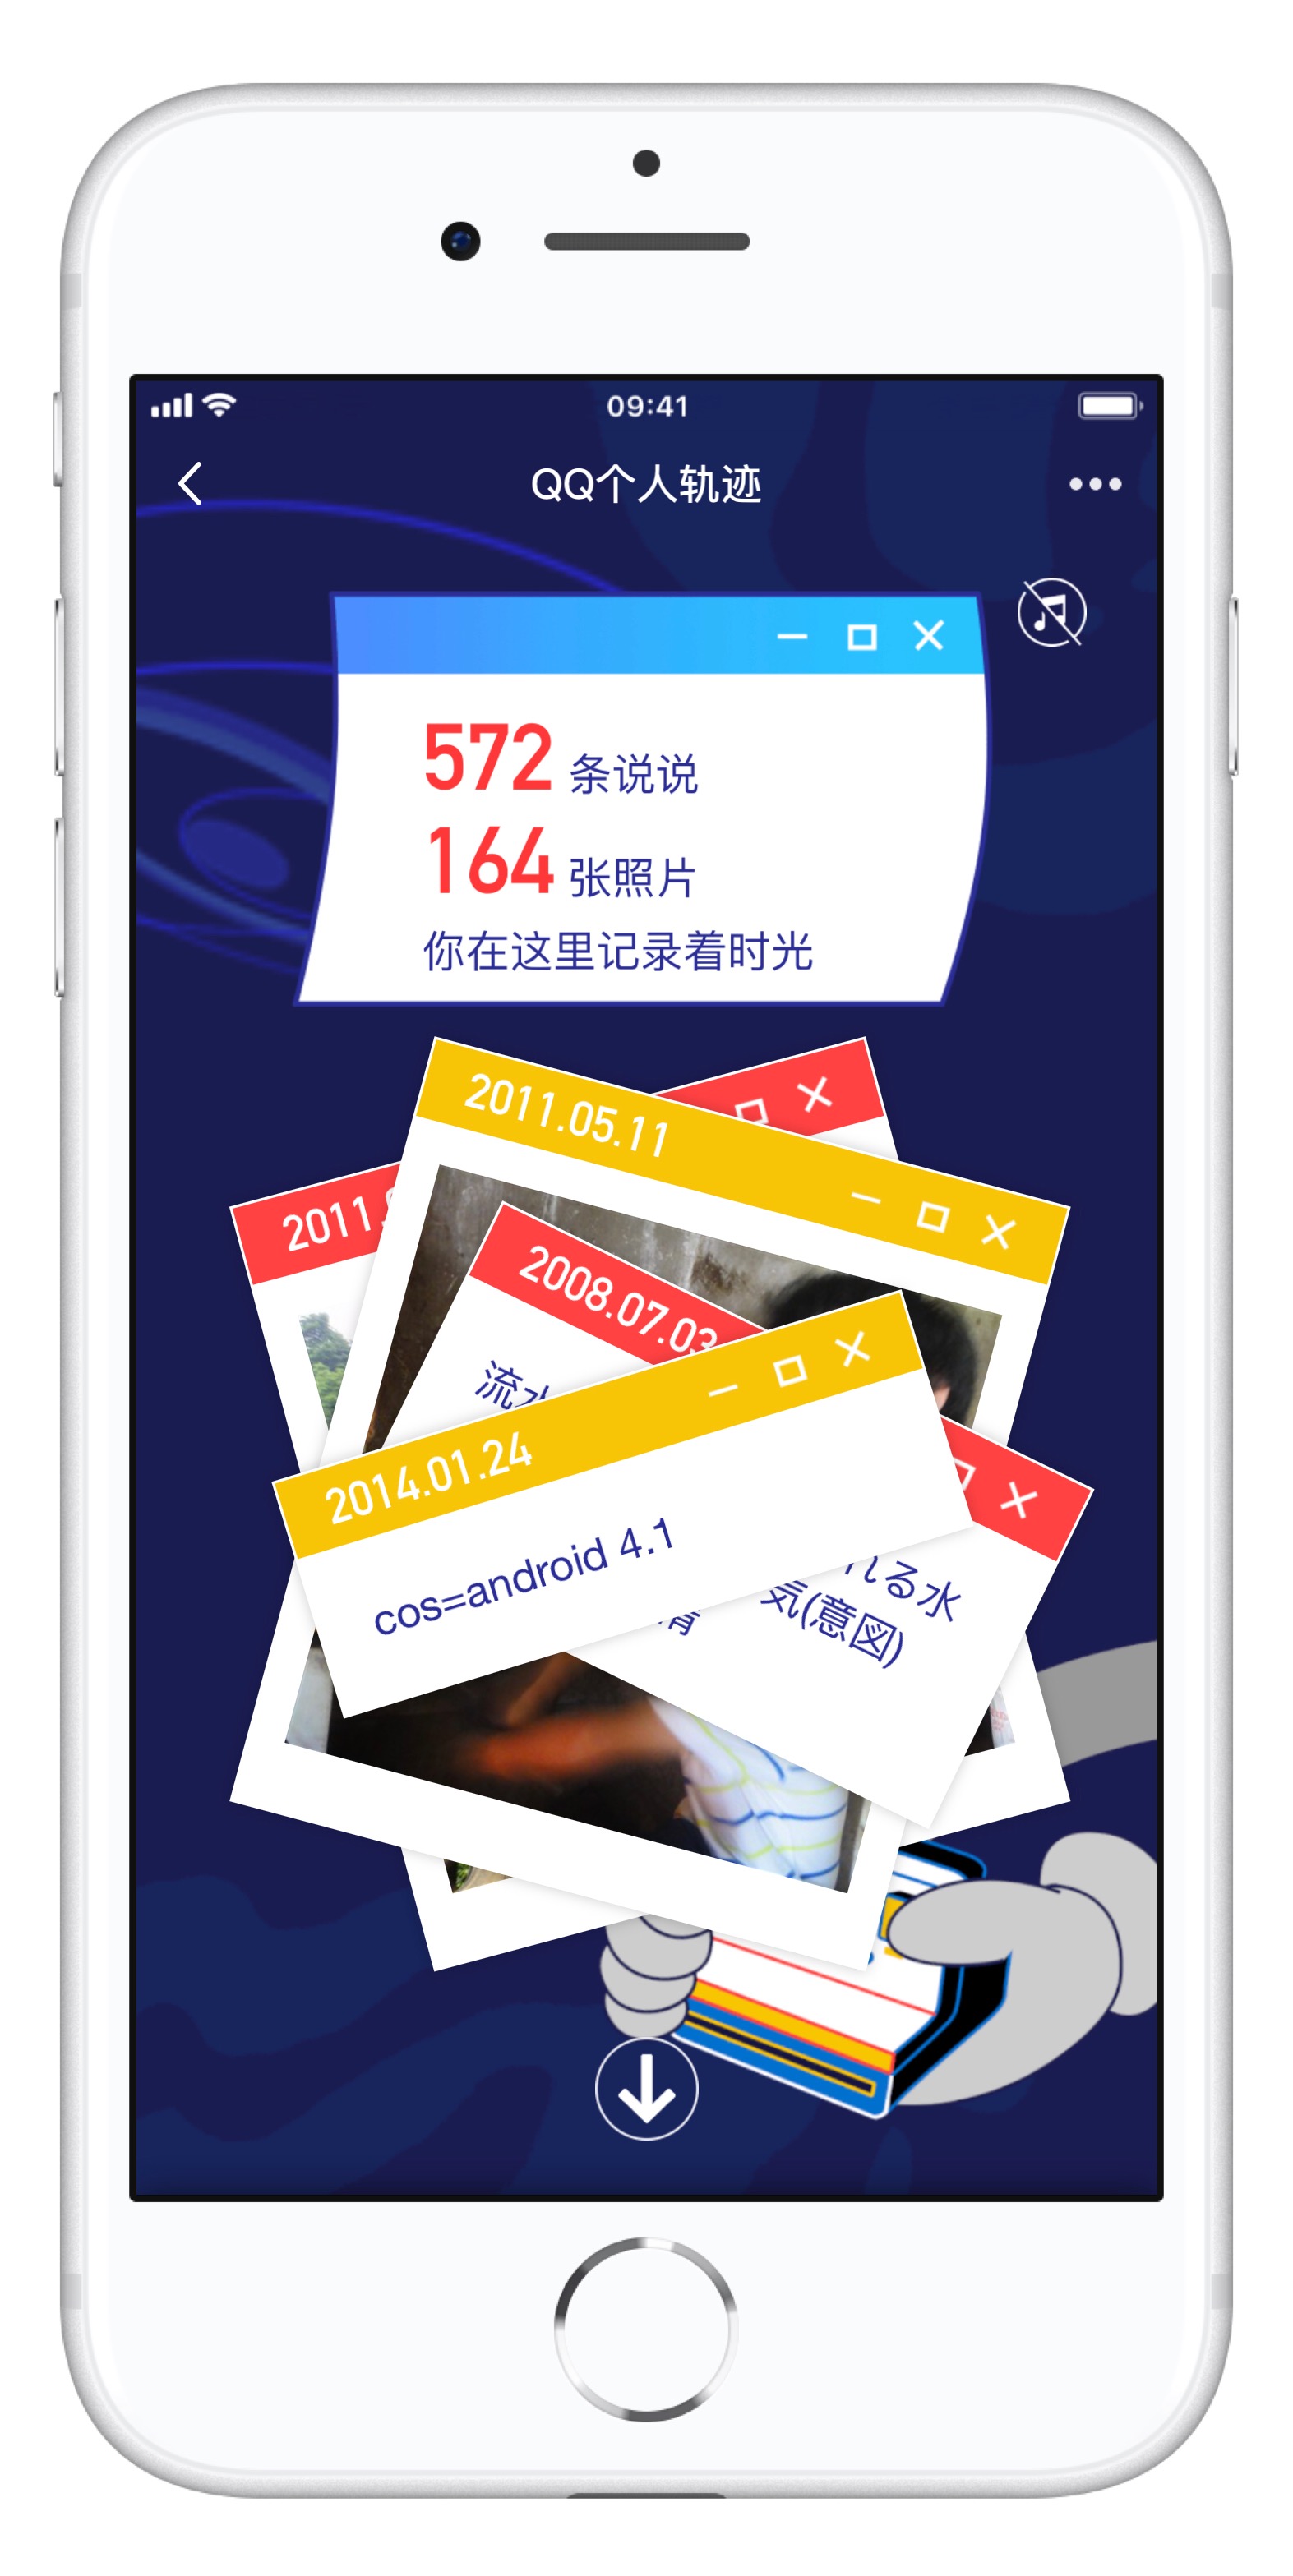 腾讯 QQ 个人轨迹查询地址 | 如何用 iPhone 查看 QQ 个人轨迹页面？